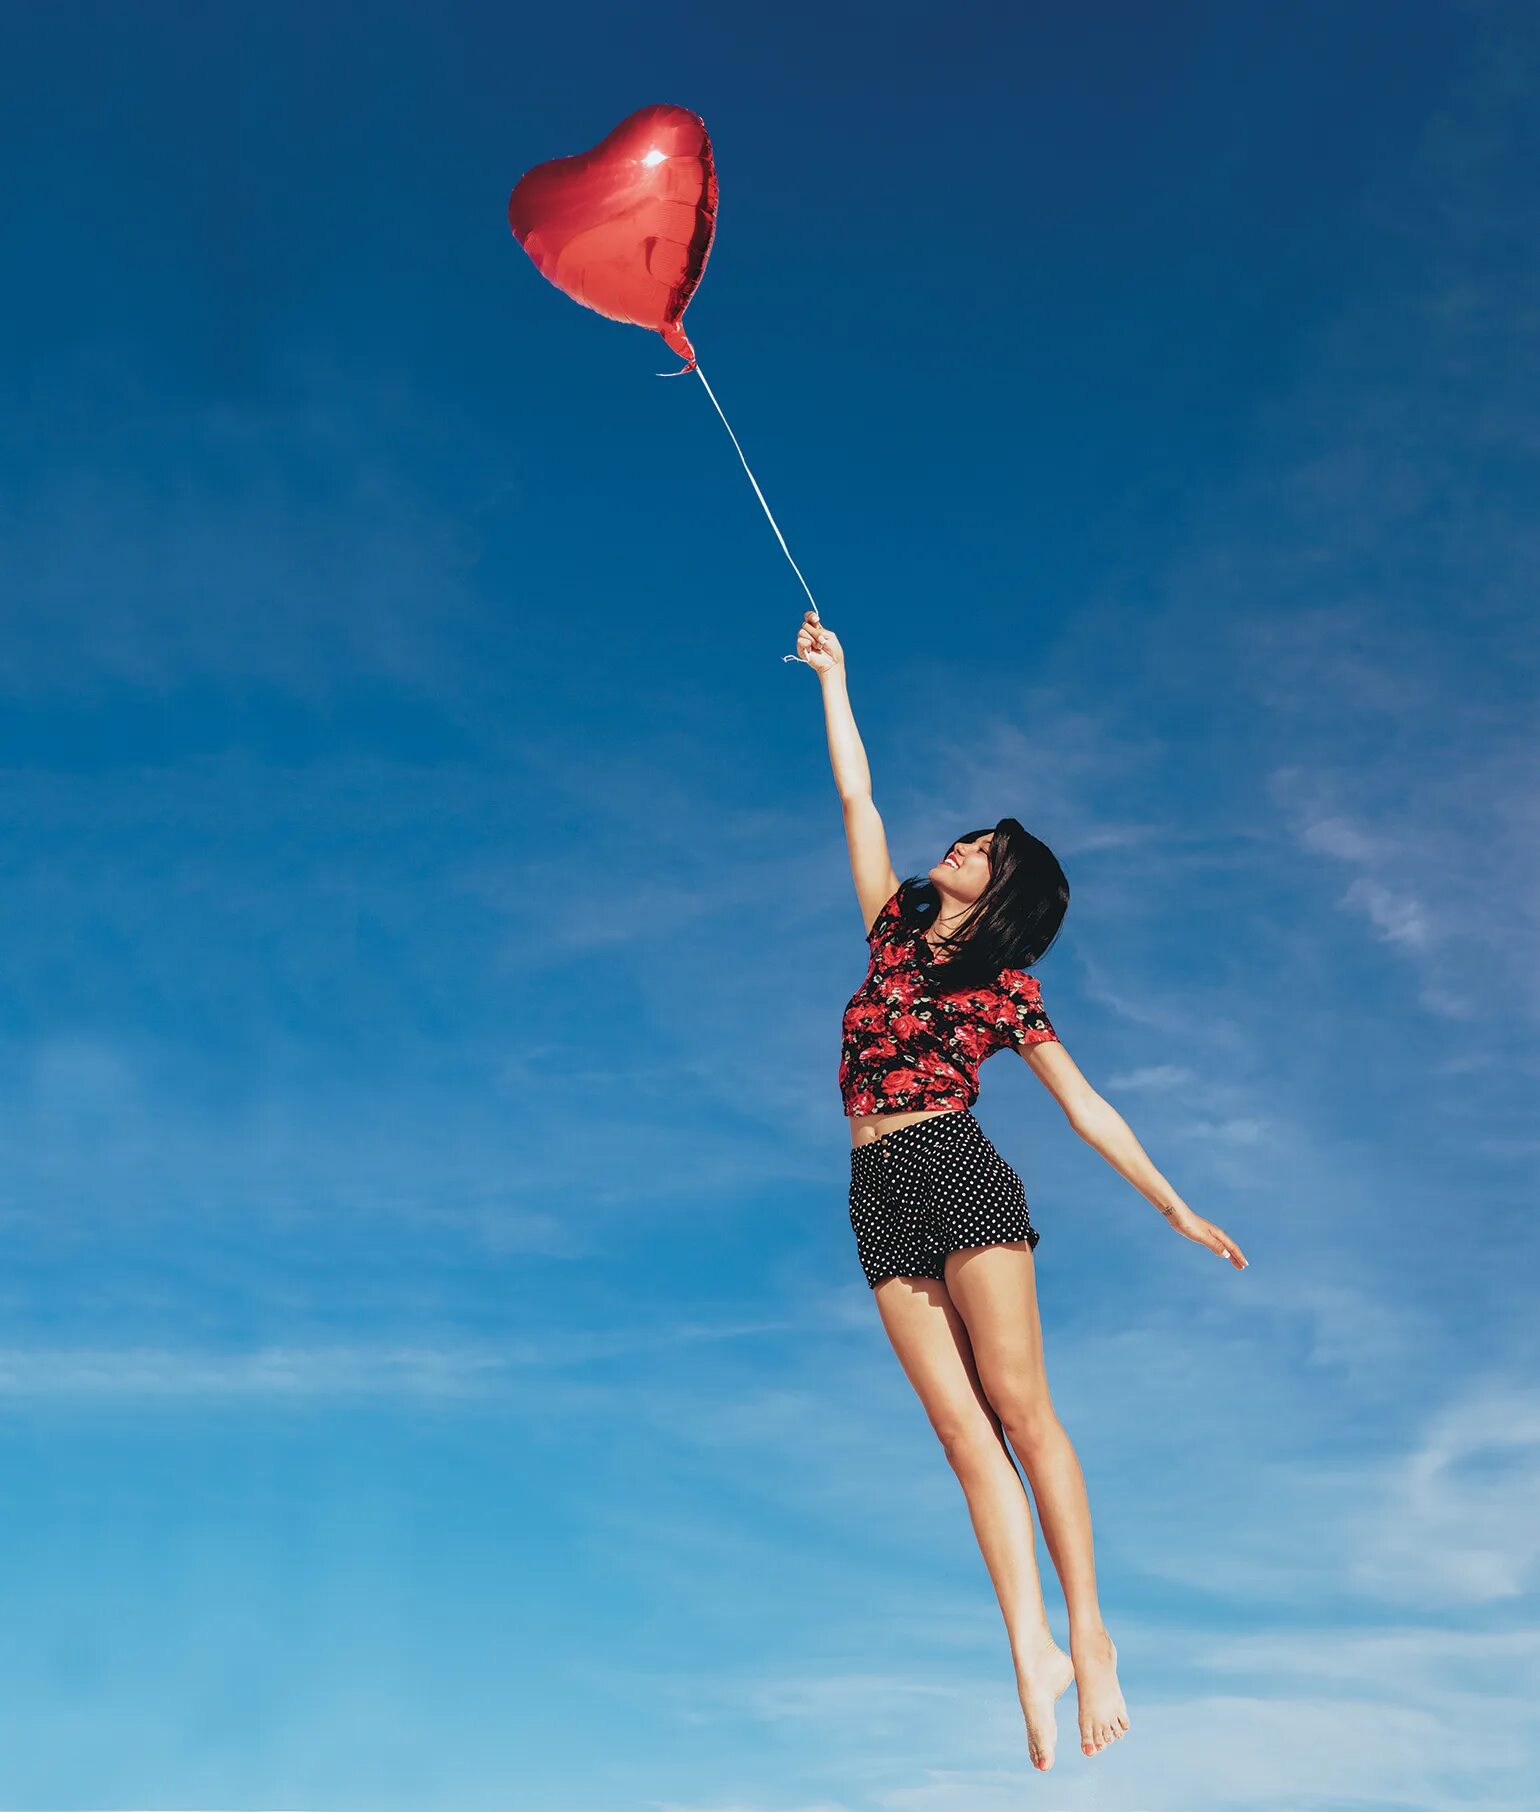 Женские fly. Флай Вумен. Flying. Girl Flying Balloon. Flying Rovana.